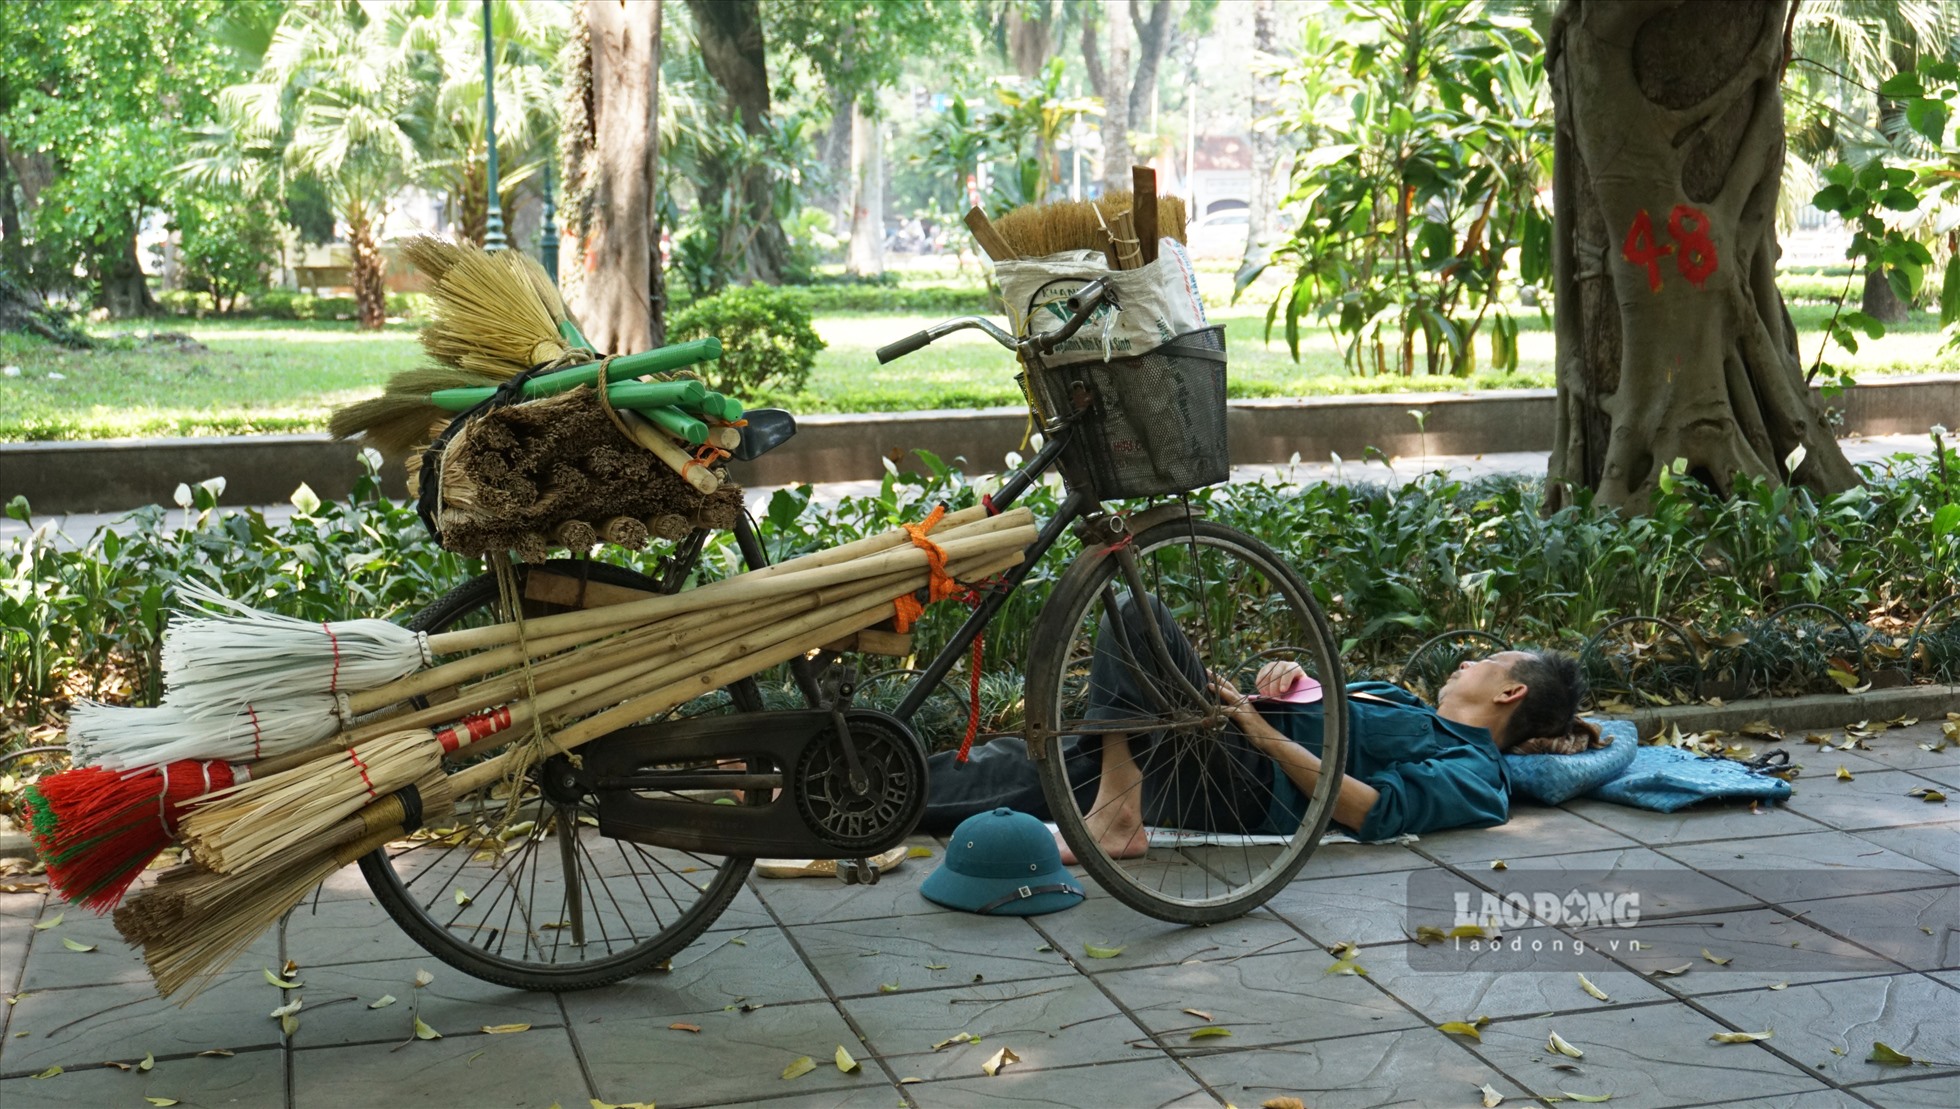 Họ chỉ cần một mảnh chiếu nhỏ để ngả lưng giữa thời tiết nắng nóng ở Hà Nội.